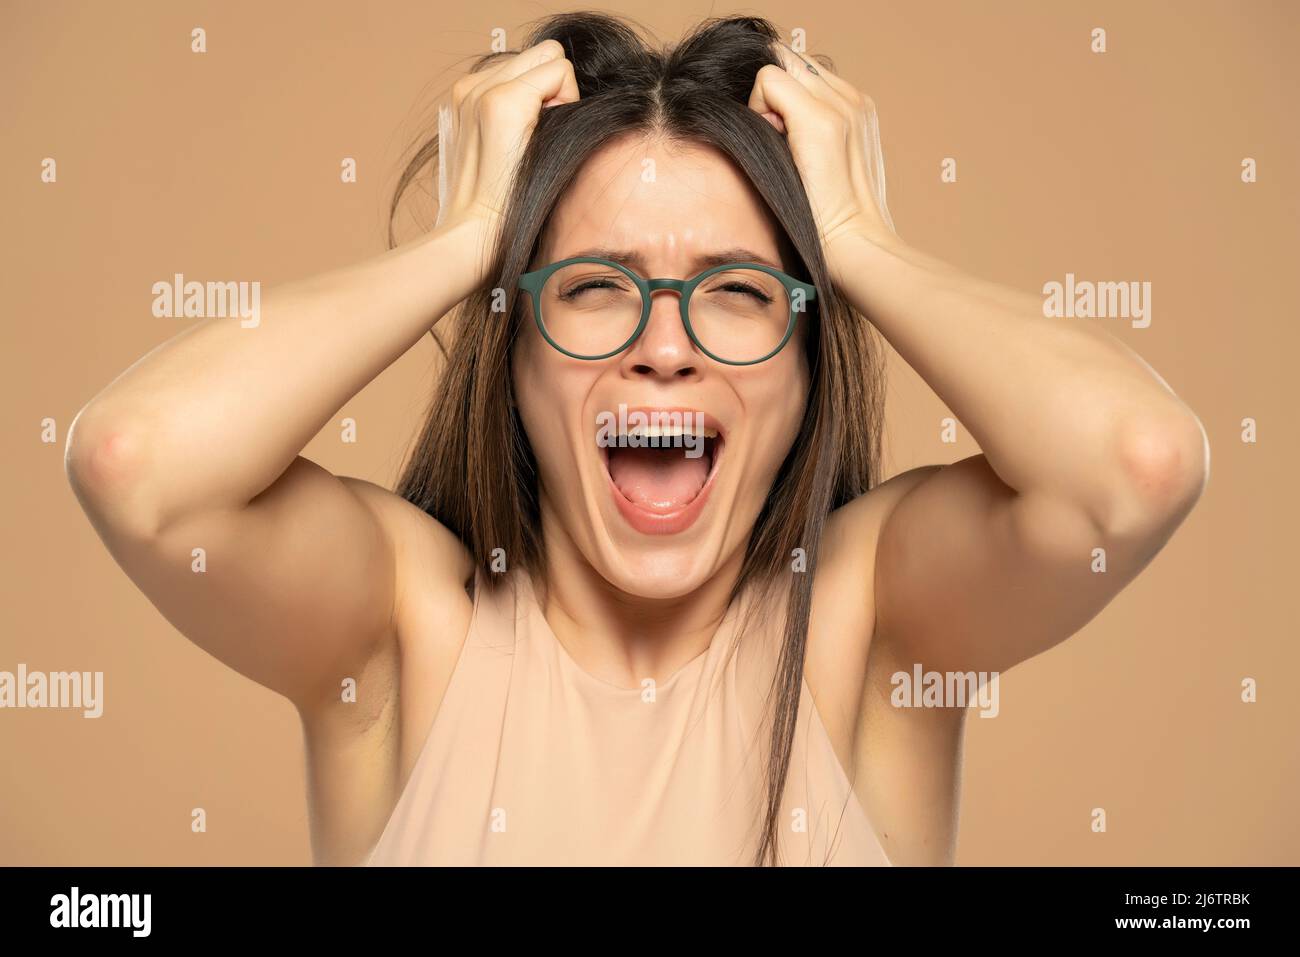 Nahaufnahme Porträt gestresst frustriert Frau mit Brille schreiend isoliert auf beigem Hintergrund. Negative menschliche Emotion Gesichtsexpression Reaktion atti Stockfoto